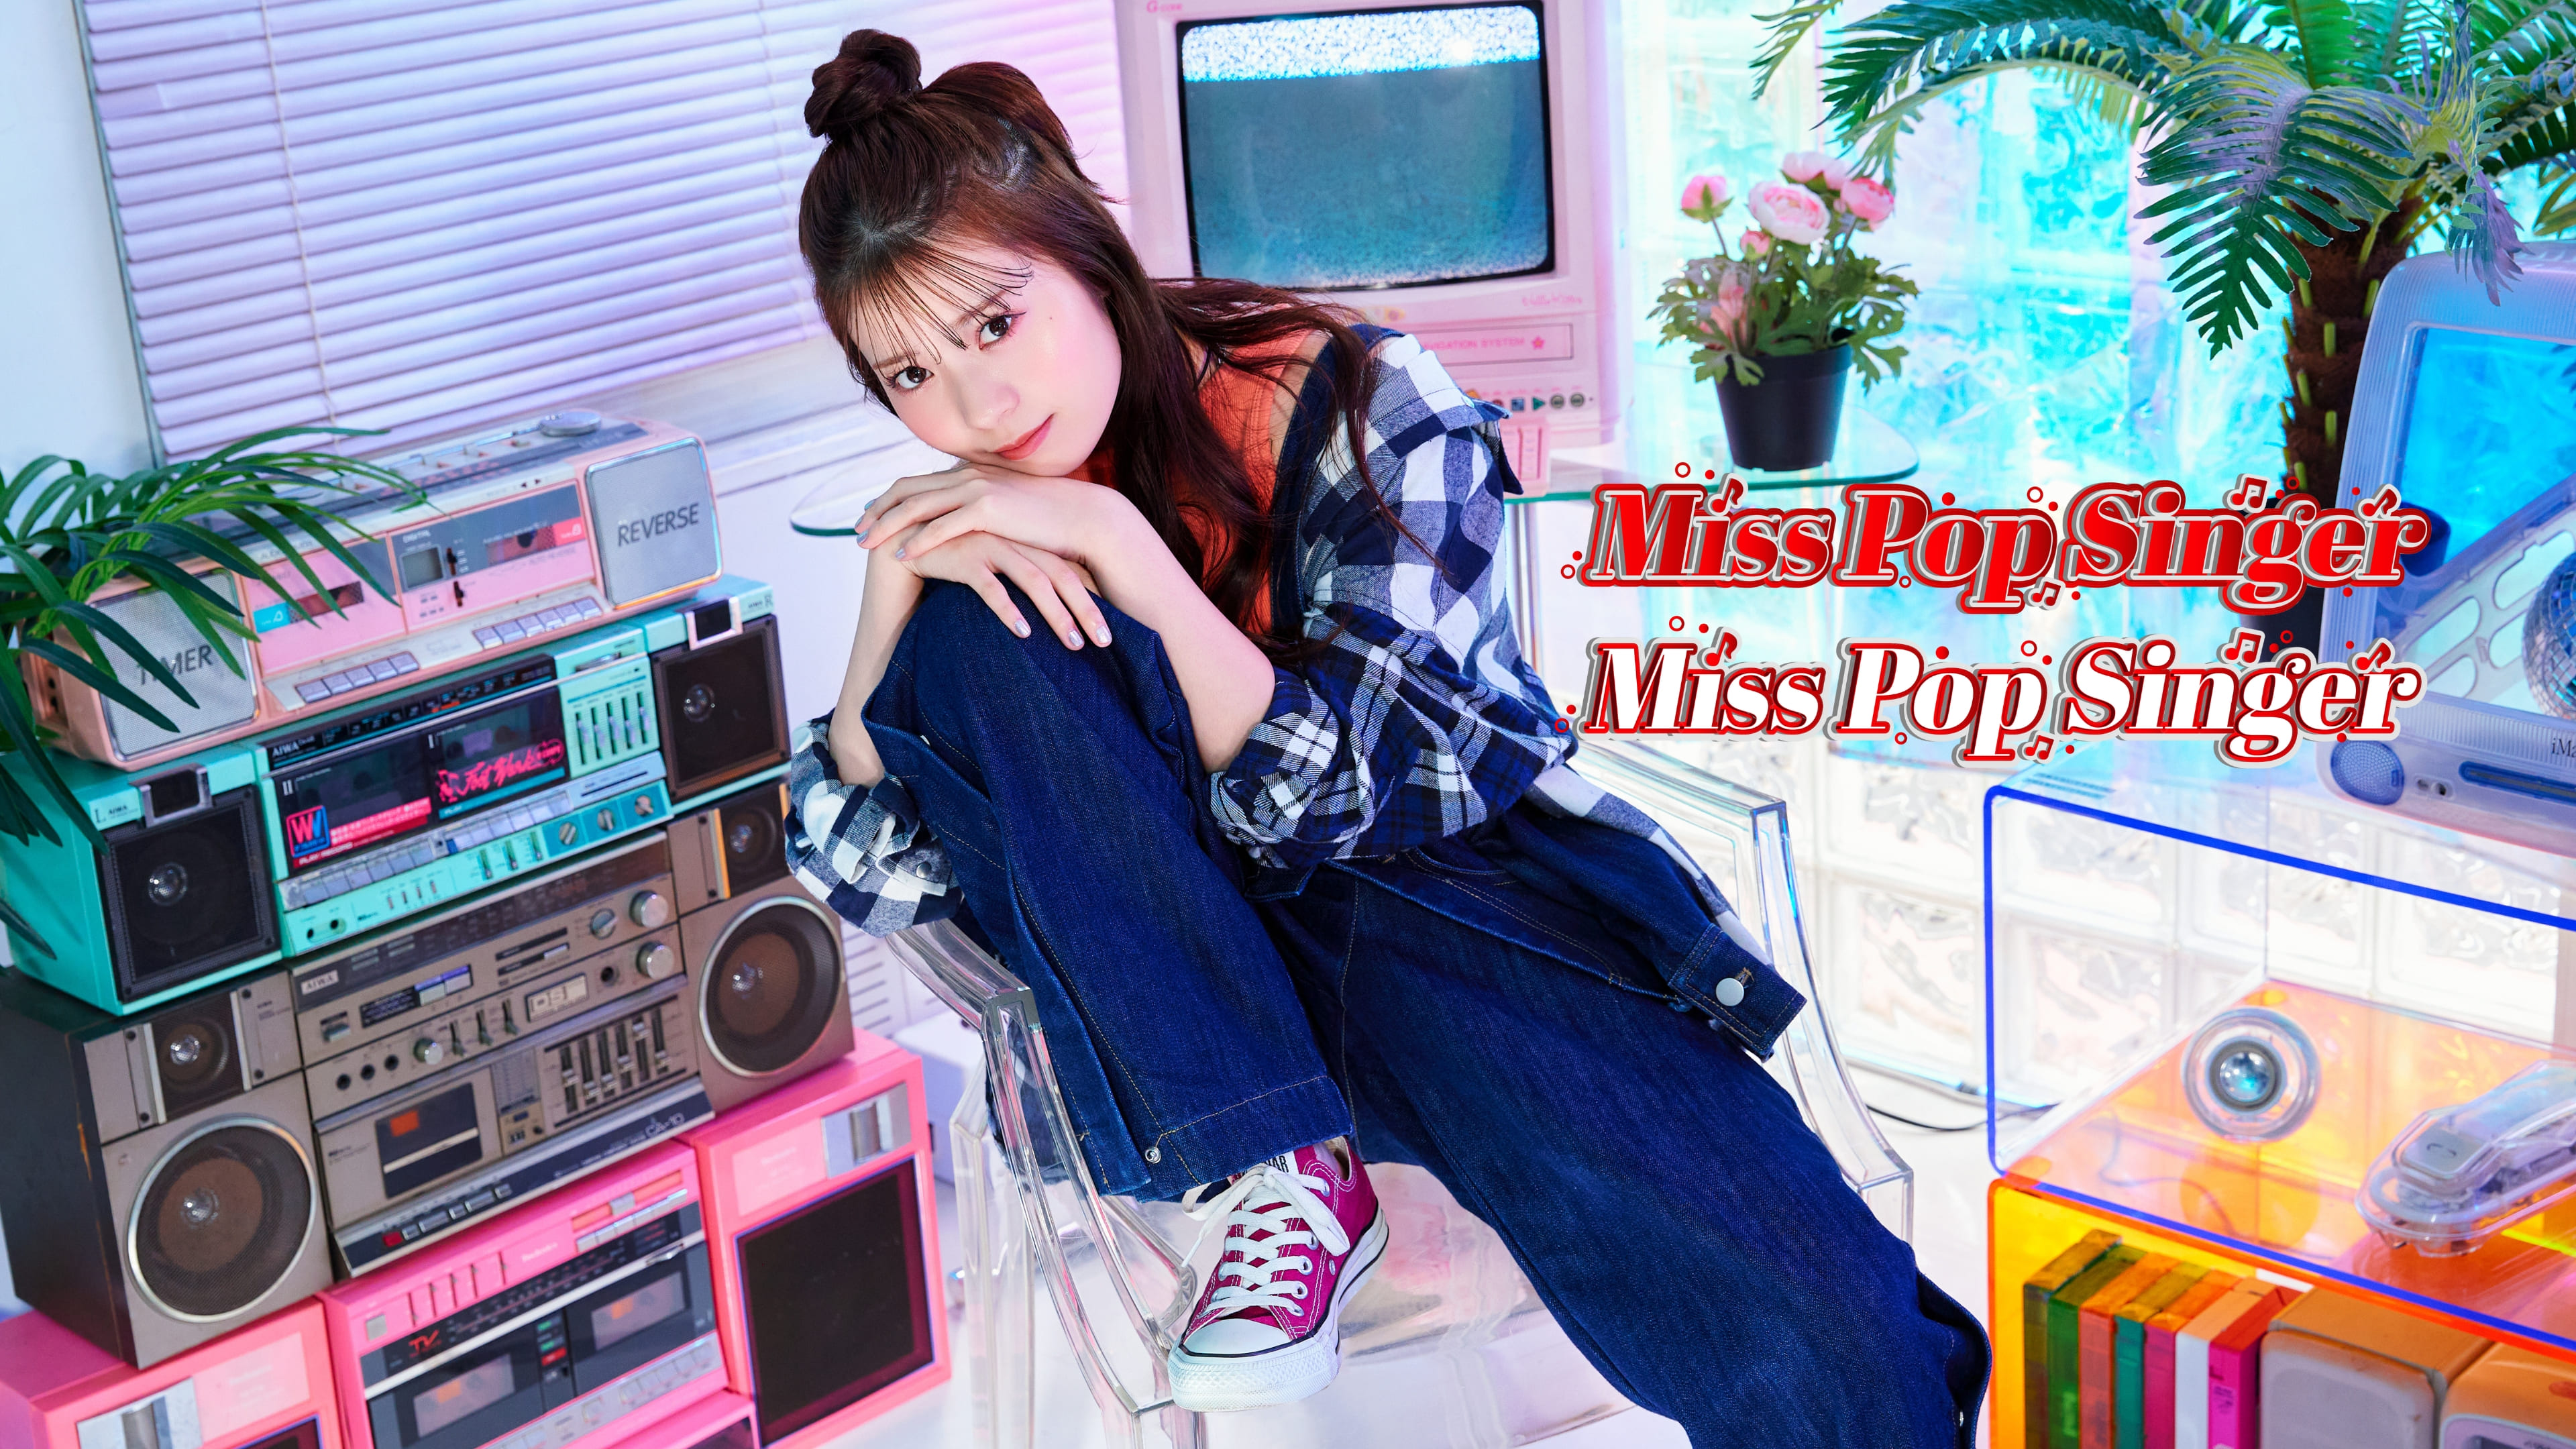 “日本一ポップな次世代Singer”を発掘する国内最大級のコンテスト「Miss Pop Singer」開催決定！応援アンバサダーにSNS 総フォロワー数350万超え 星乃夢奈が就任！